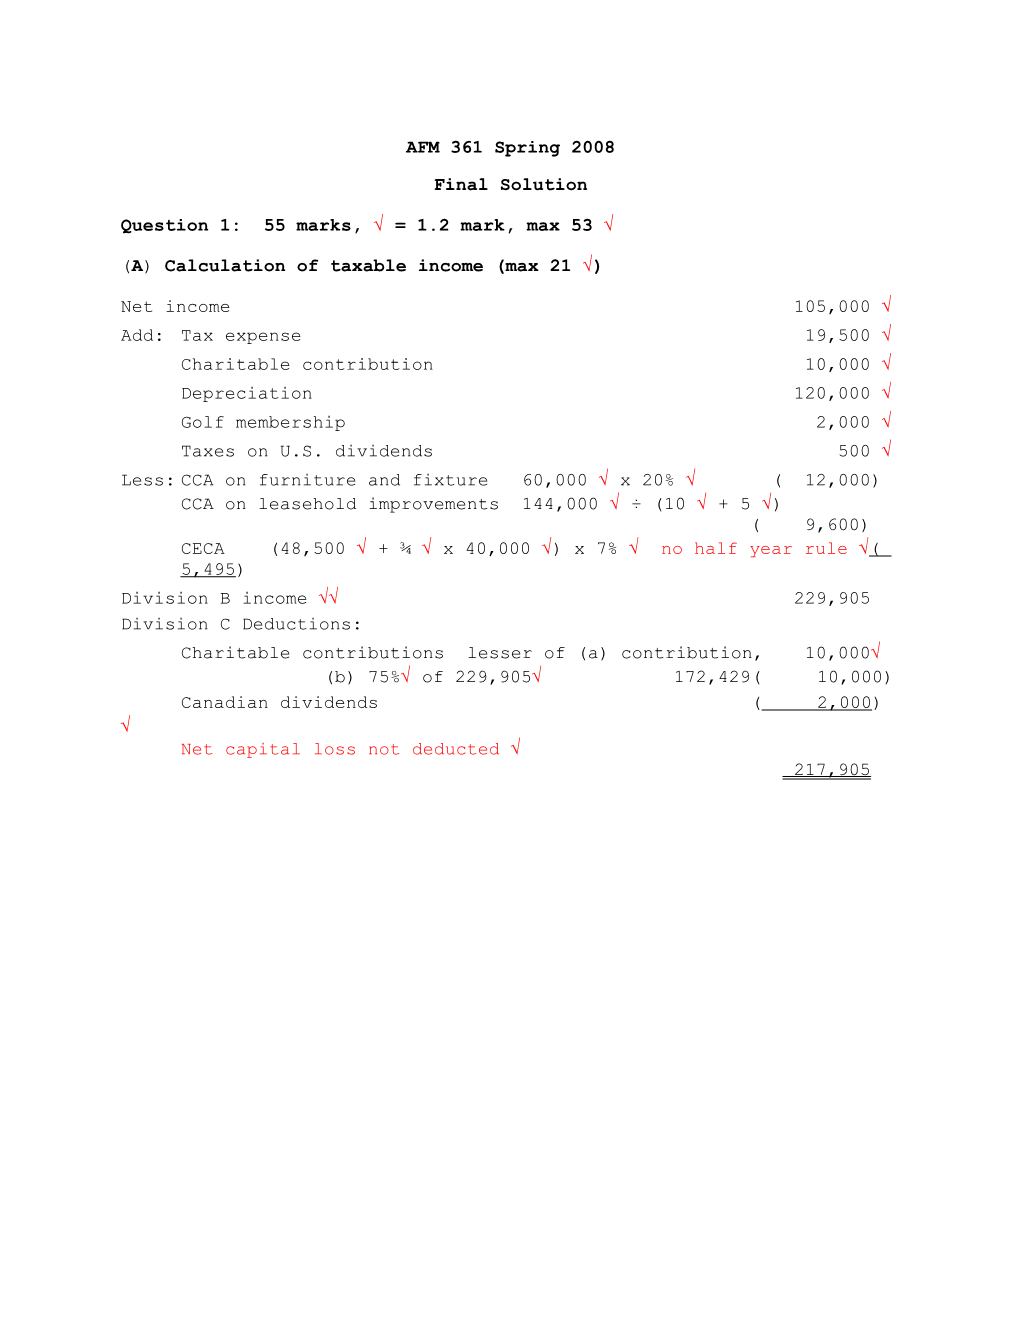 A) Calculation of Taxable Income(Max 21